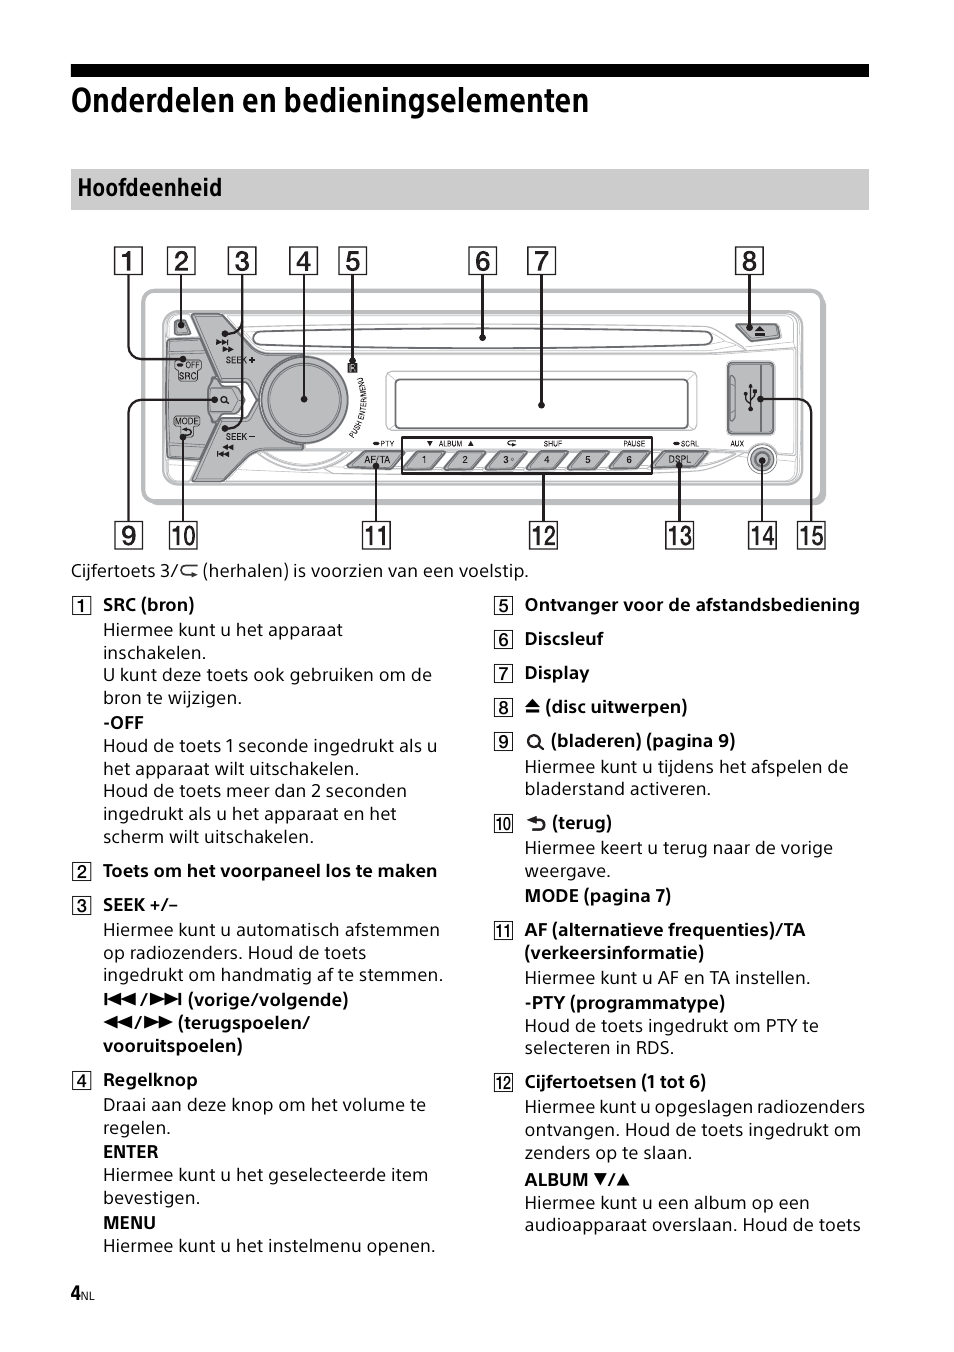 Onderdelen en bedieningselementen, Hoofdeenheid | Sony CDX-G1000U User Manual | Page 70 / 84